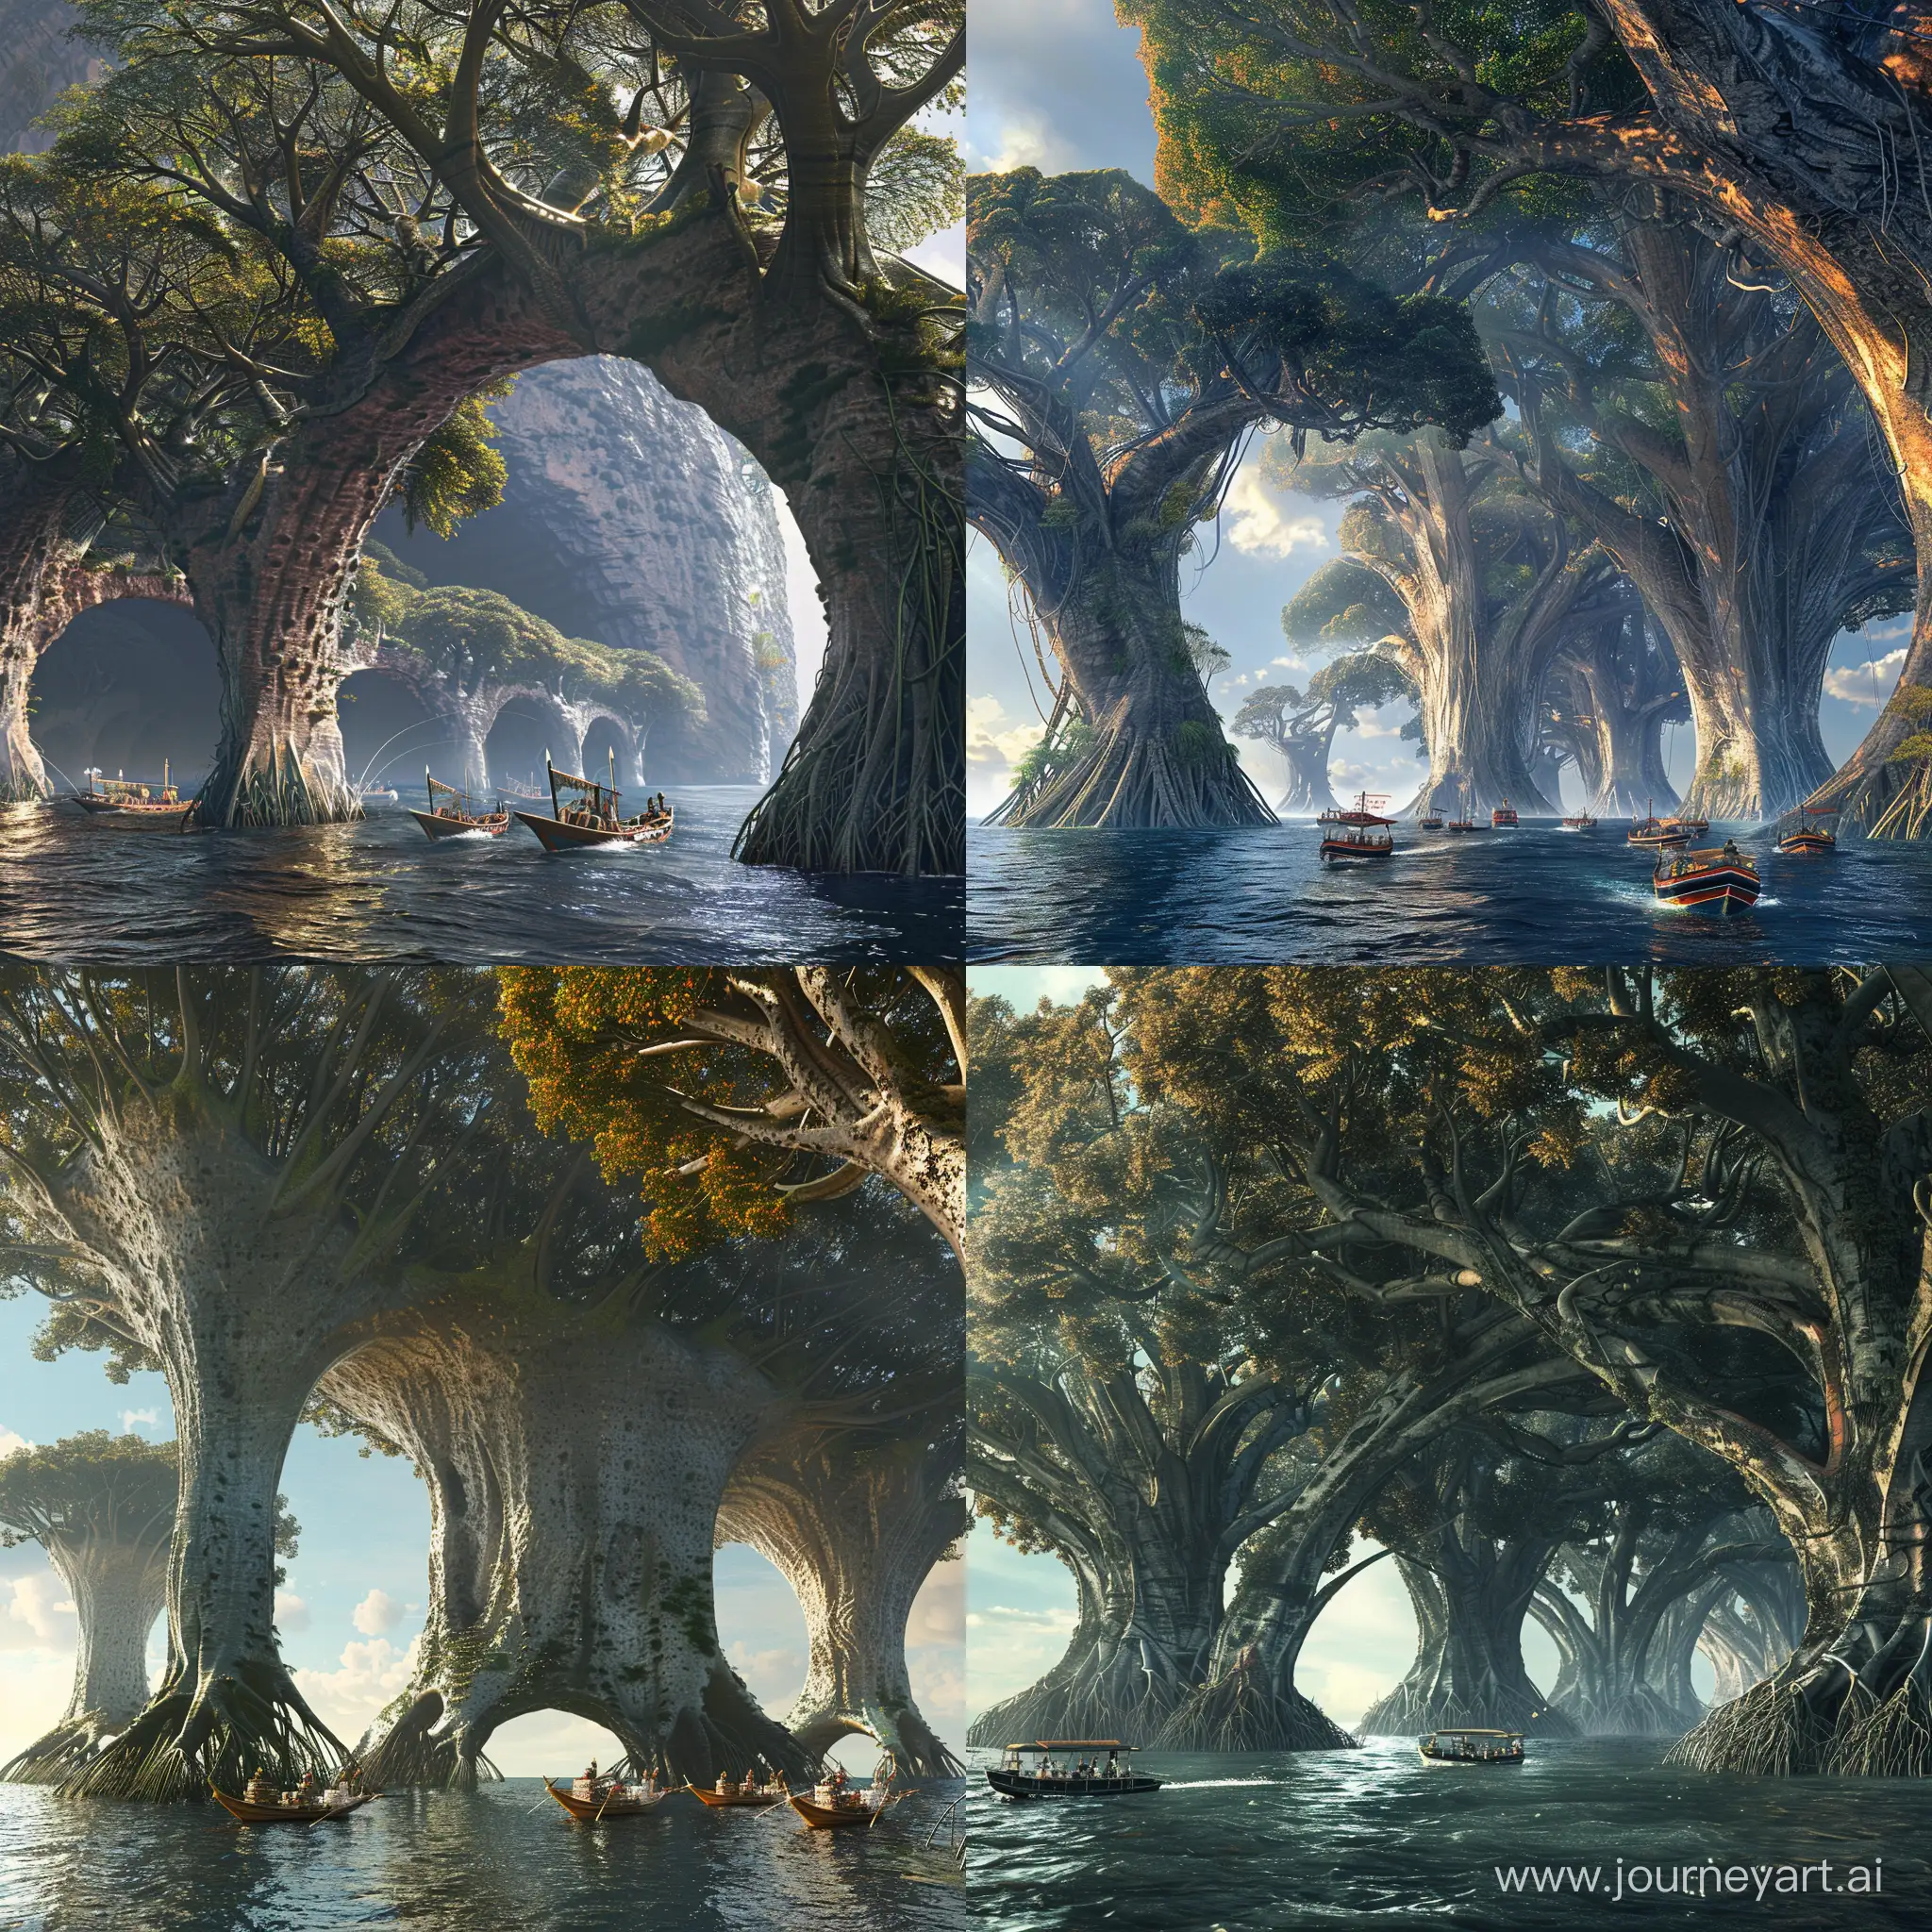 Vista panorámica de un planeta alienígena, la base de la tierra es agua profunda y hay árboles de manglares gigantescos, tan grendez que hay barcos nativos pasando entre los grandes arcos de sus raíces